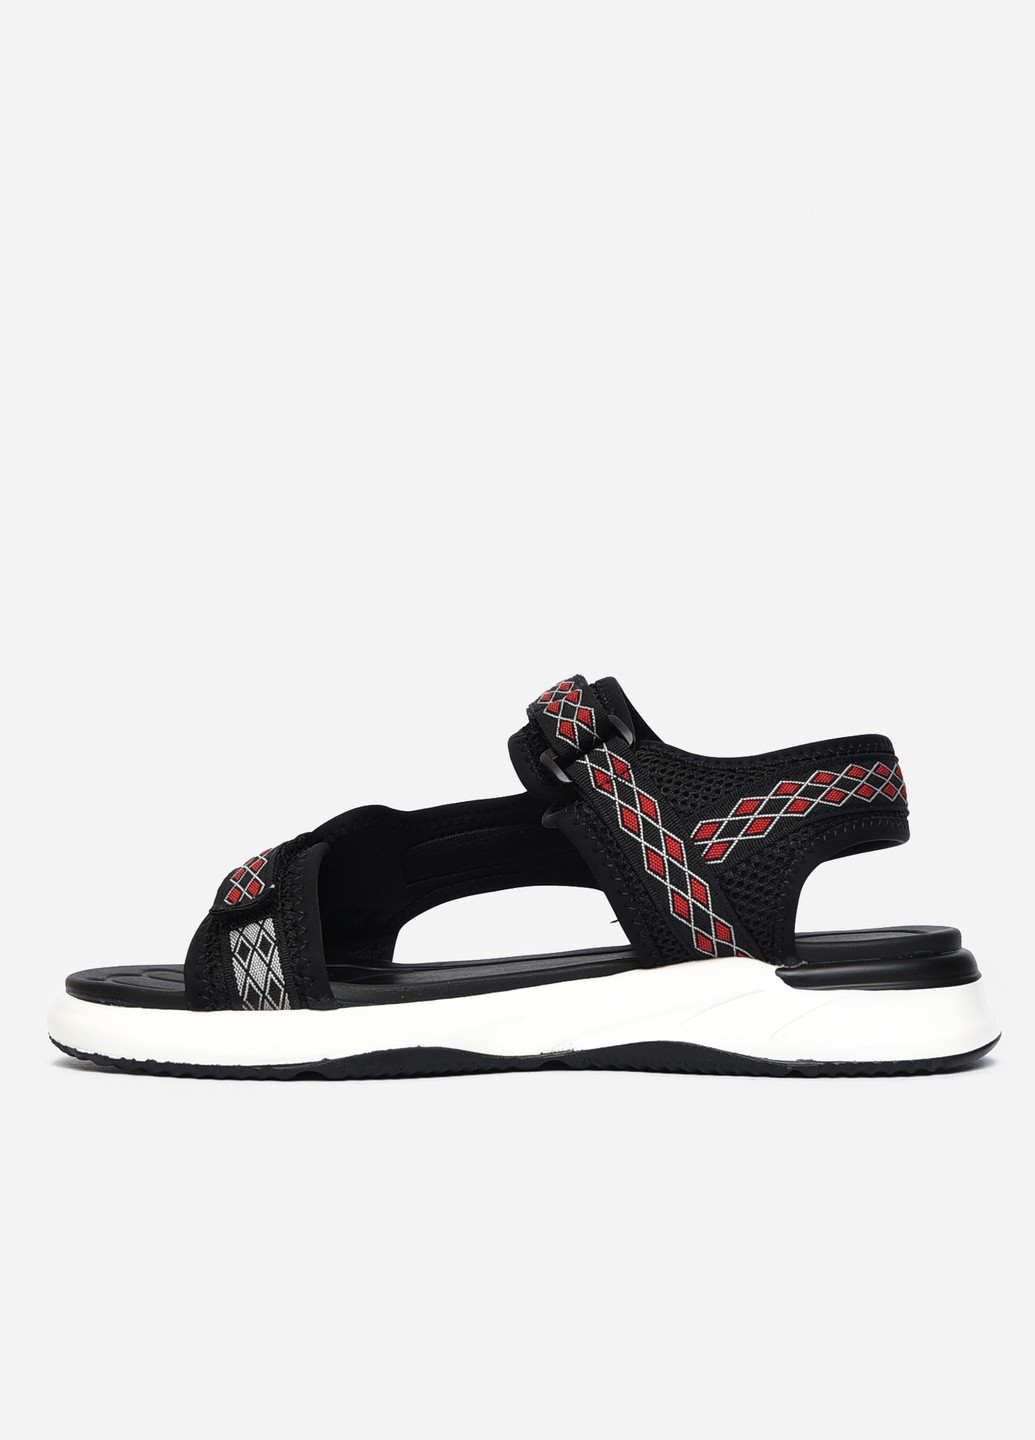 Пляжные сандалии мужские чорного цвета текстиль Let's Shop